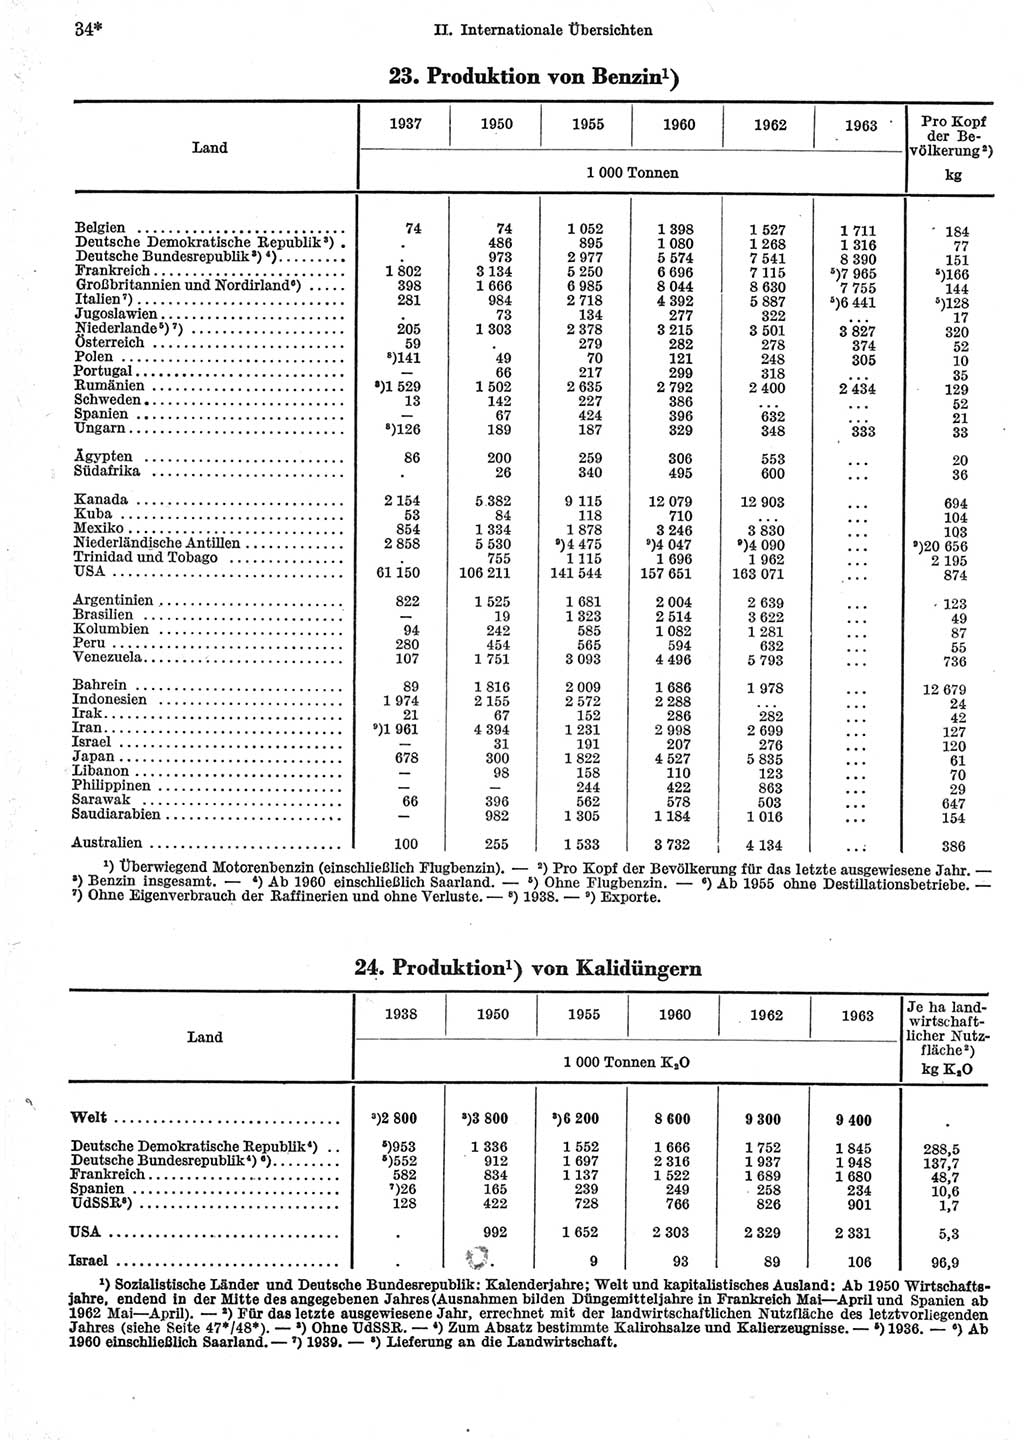 Statistisches Jahrbuch der Deutschen Demokratischen Republik (DDR) 1965, Seite 34 (Stat. Jb. DDR 1965, S. 34)